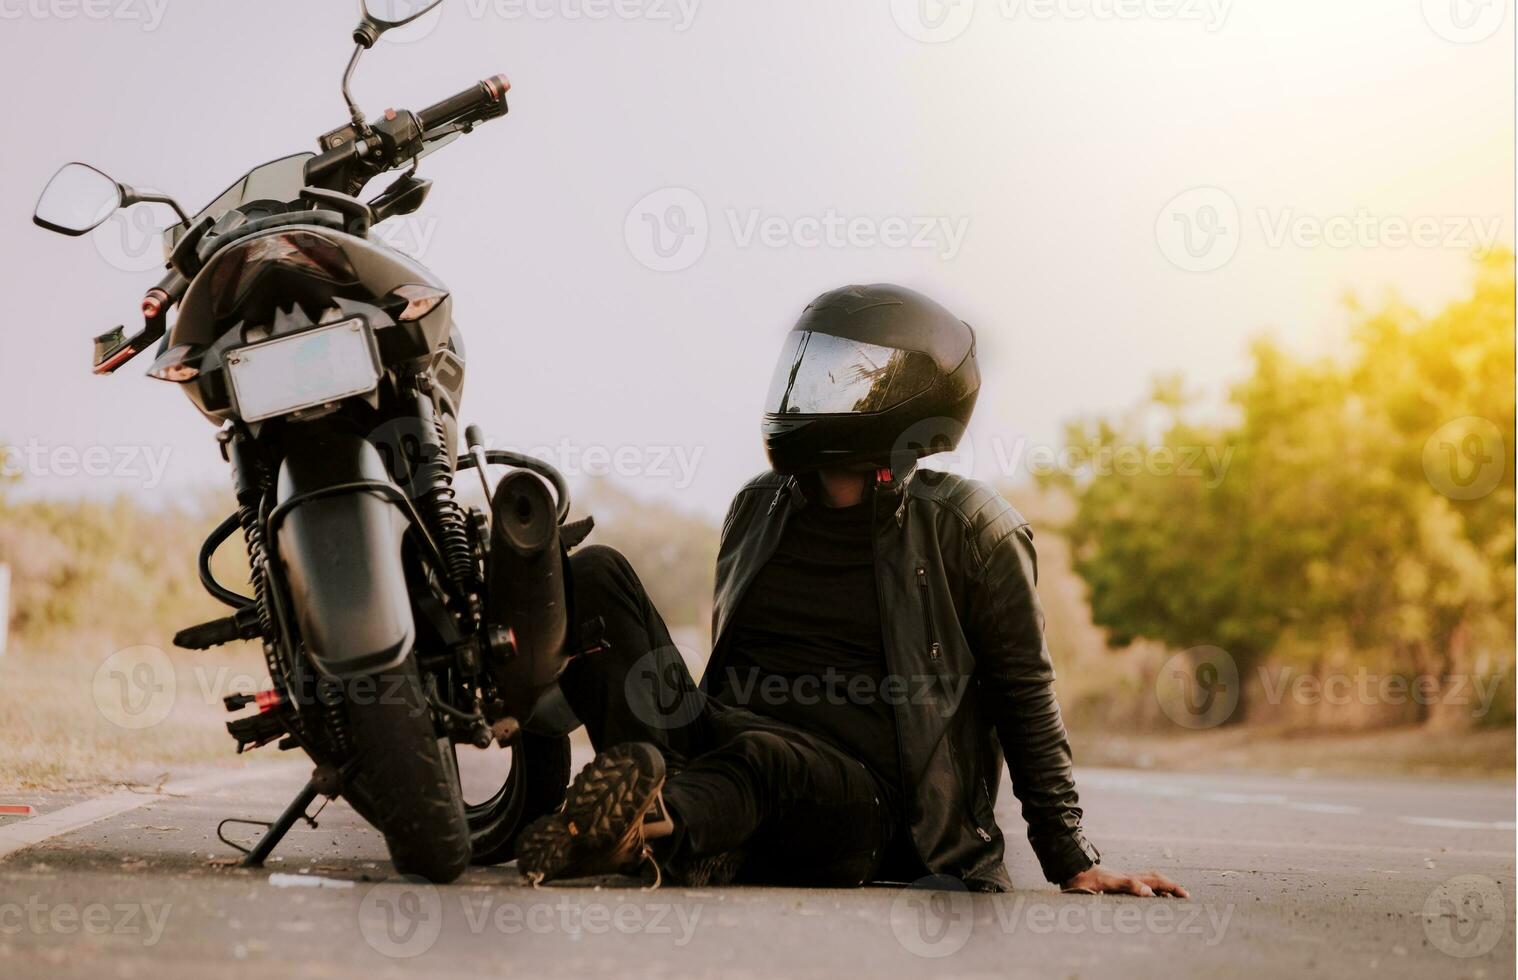 motorcyklist Sammanträde Nästa till hans motorcykel. motorcyklist Sammanträde och lutande på hans motorcykel på de asfalt foto